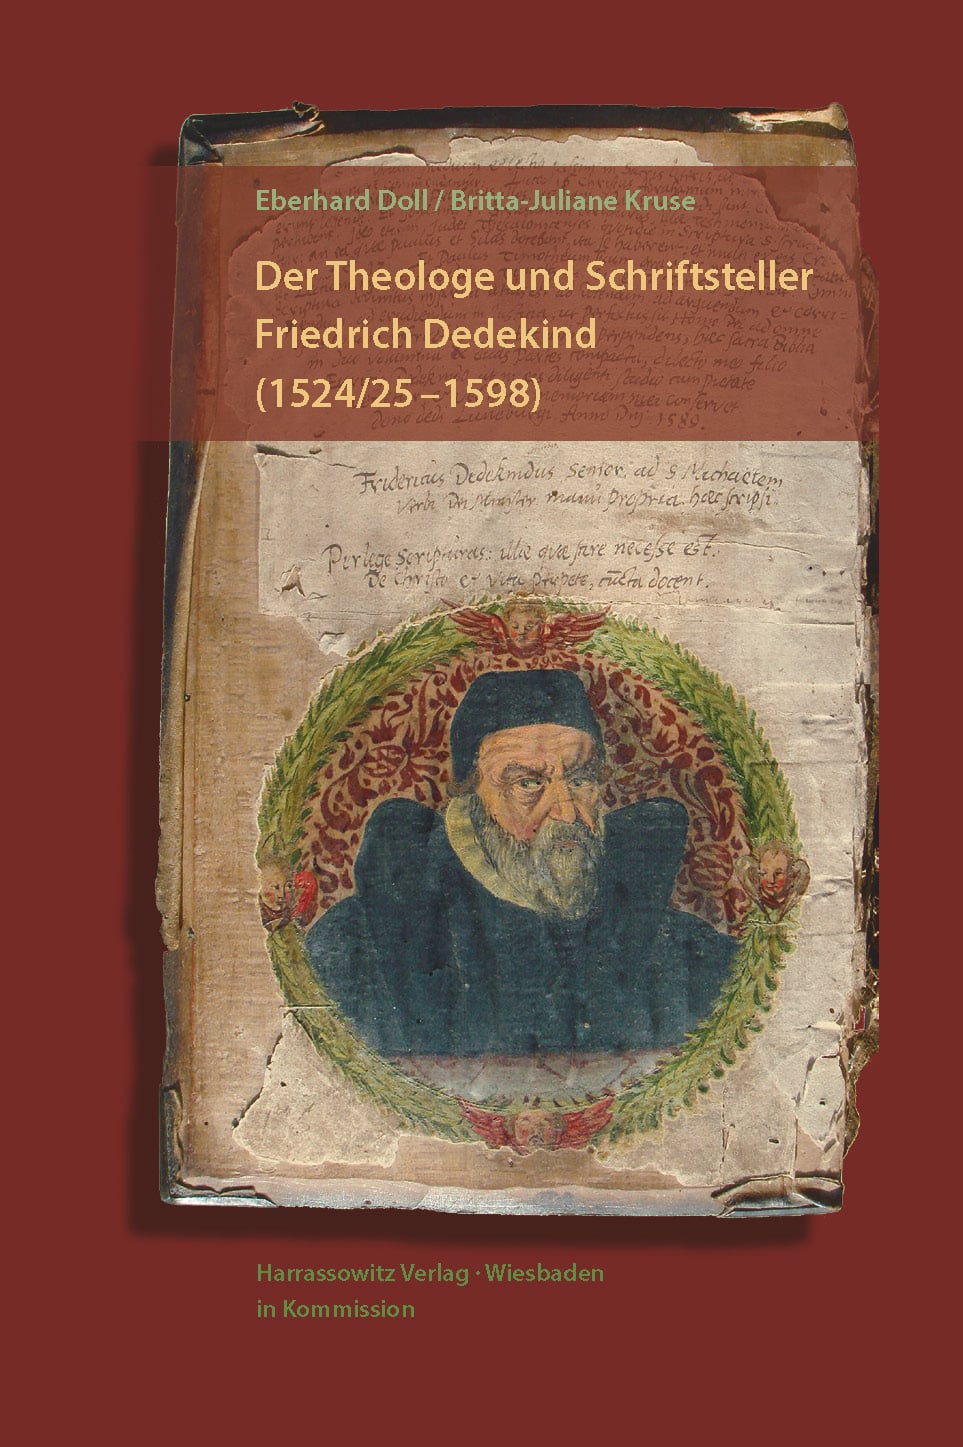 Der Theologe und Schriftsteller Friedrich Dedekind (1524/25–1598) - Eine Biographie. Mit einem Beitrag von Britta-Juliane Kruse zu Dedekinds geistlichen Spielen und der Erstedition der Hochtzeit zu Cana in Galilea